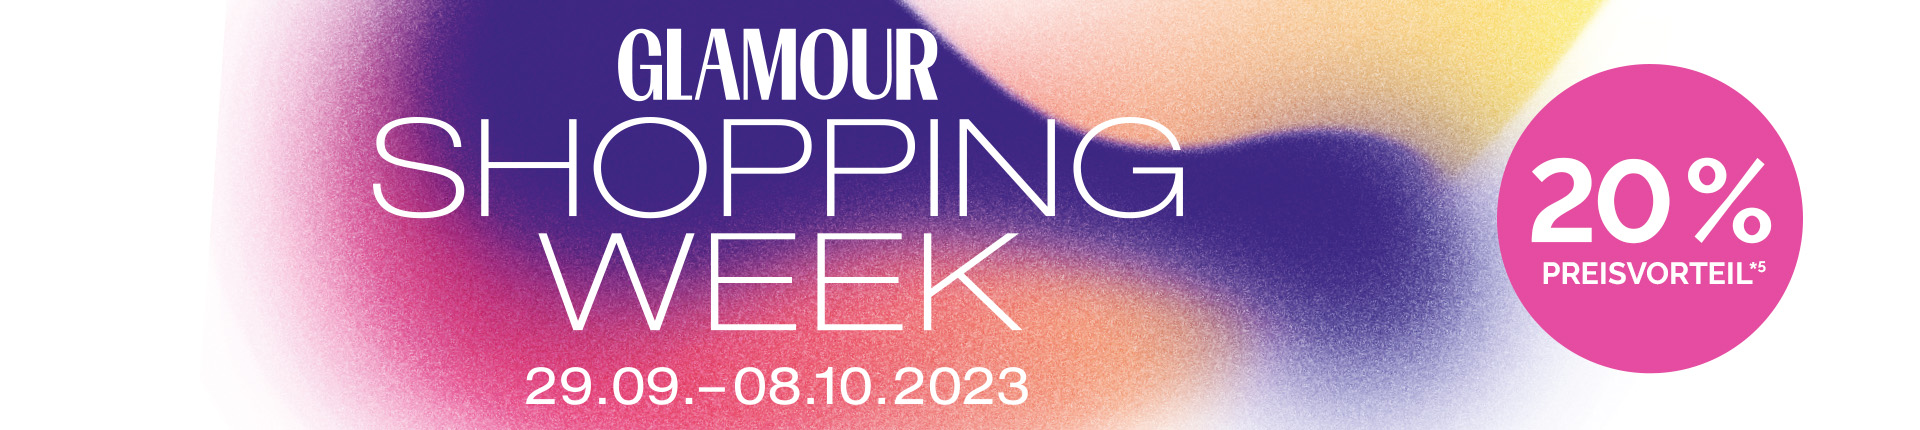 Glamour shopping week mit 20% Preisvorteil